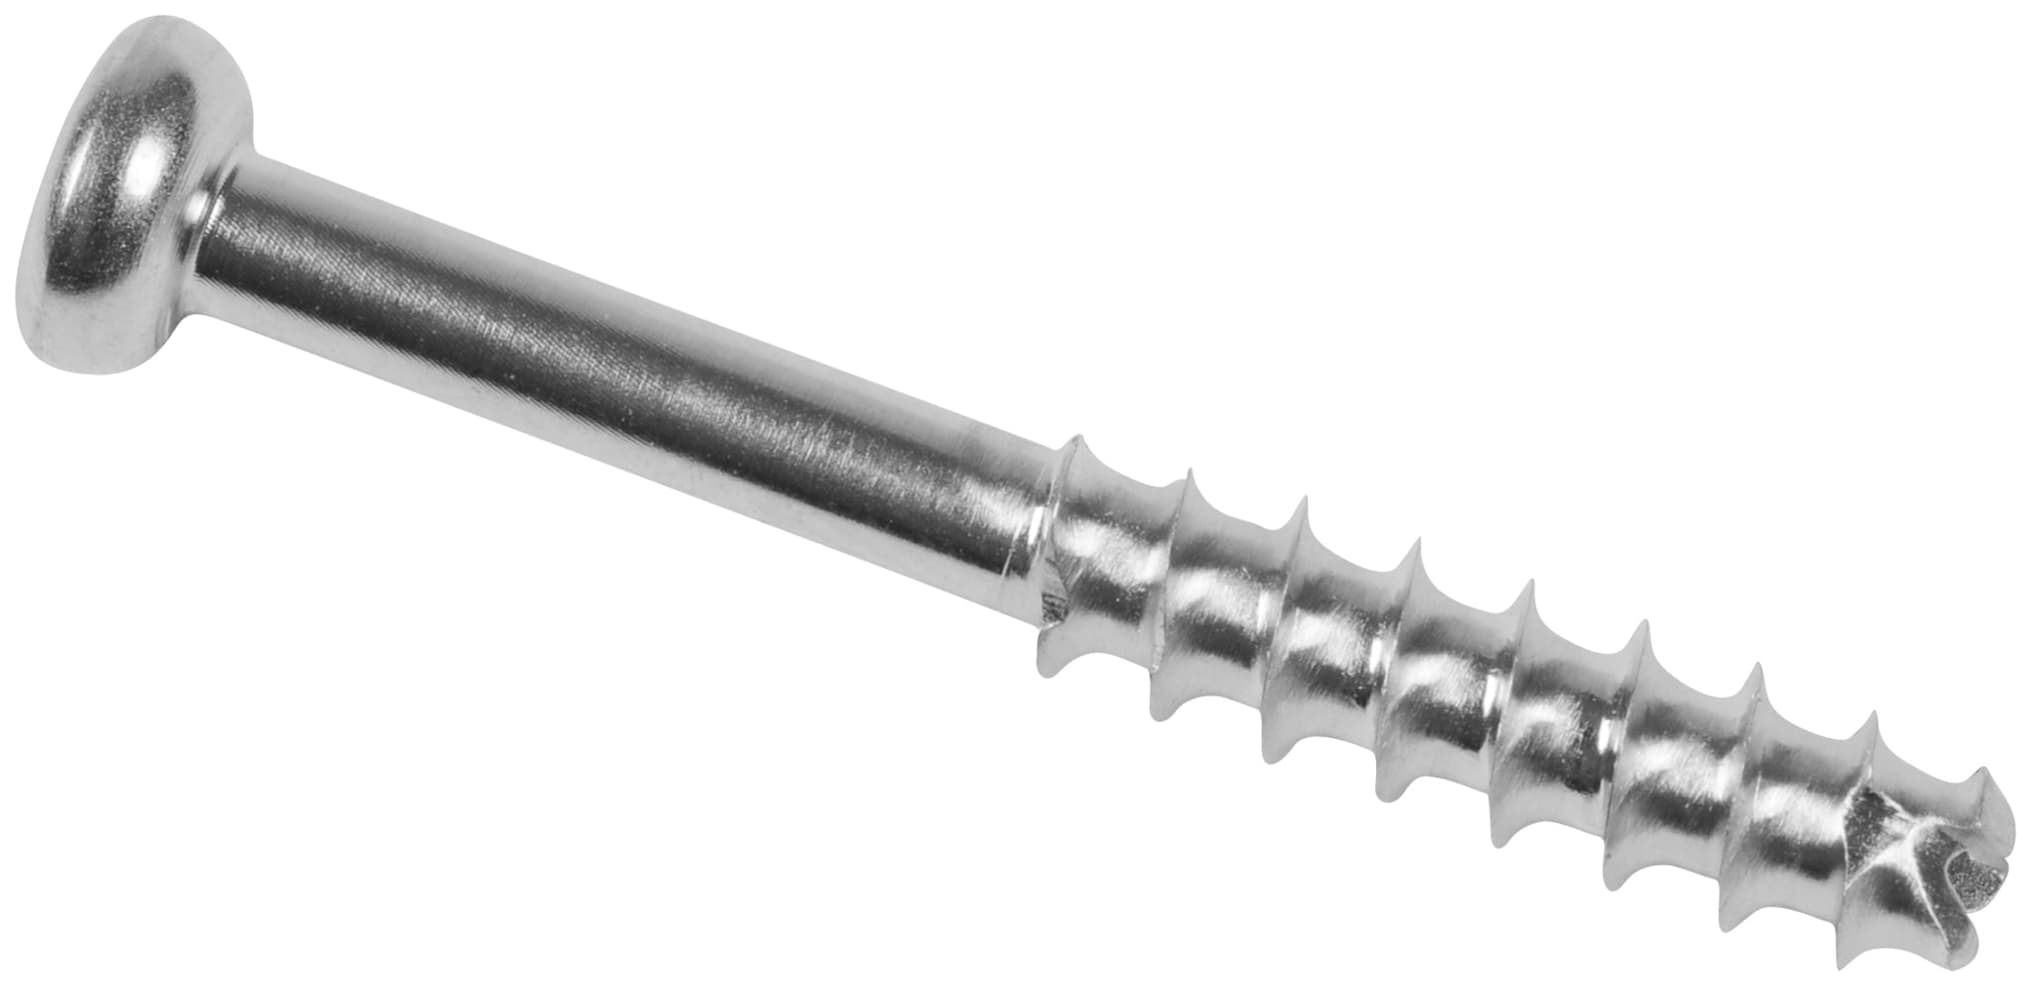 Low Profile Schraube, Stahl, kanüliert, langes Gewinde, 4.0 x 30 mm, unsteril, IM